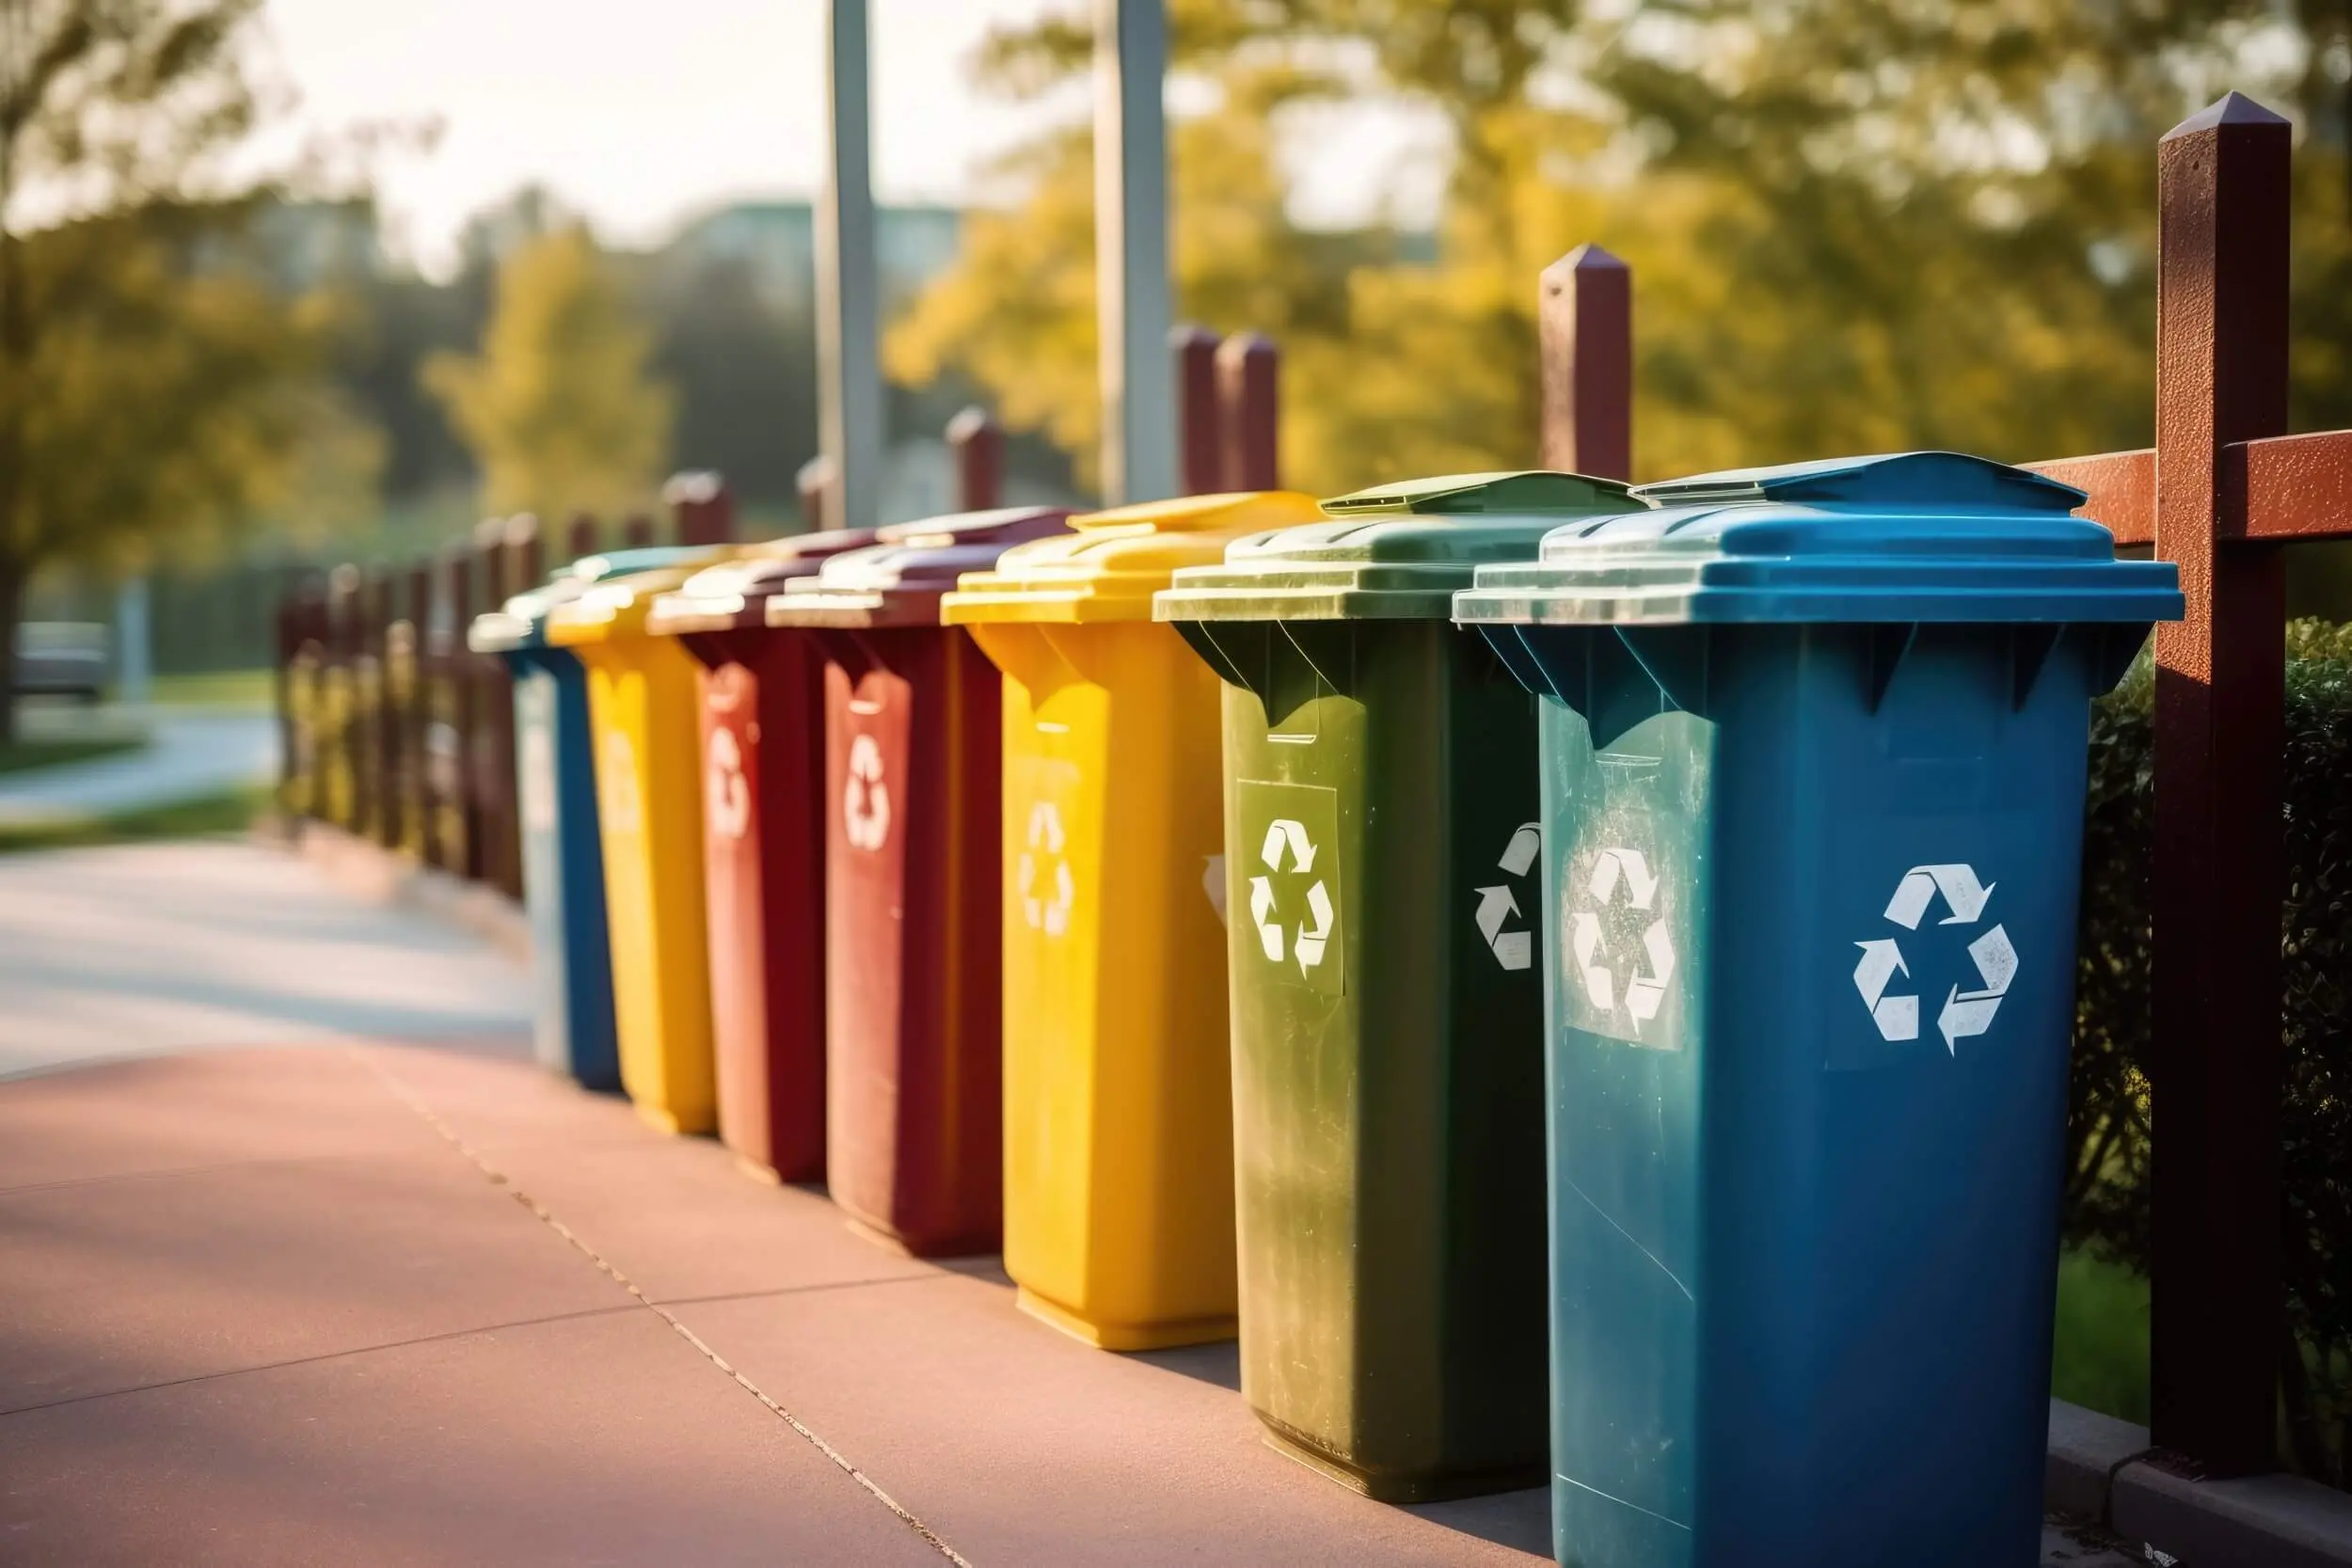 ¿Eres capaz de distinguir todos los contenedores de reciclaje?